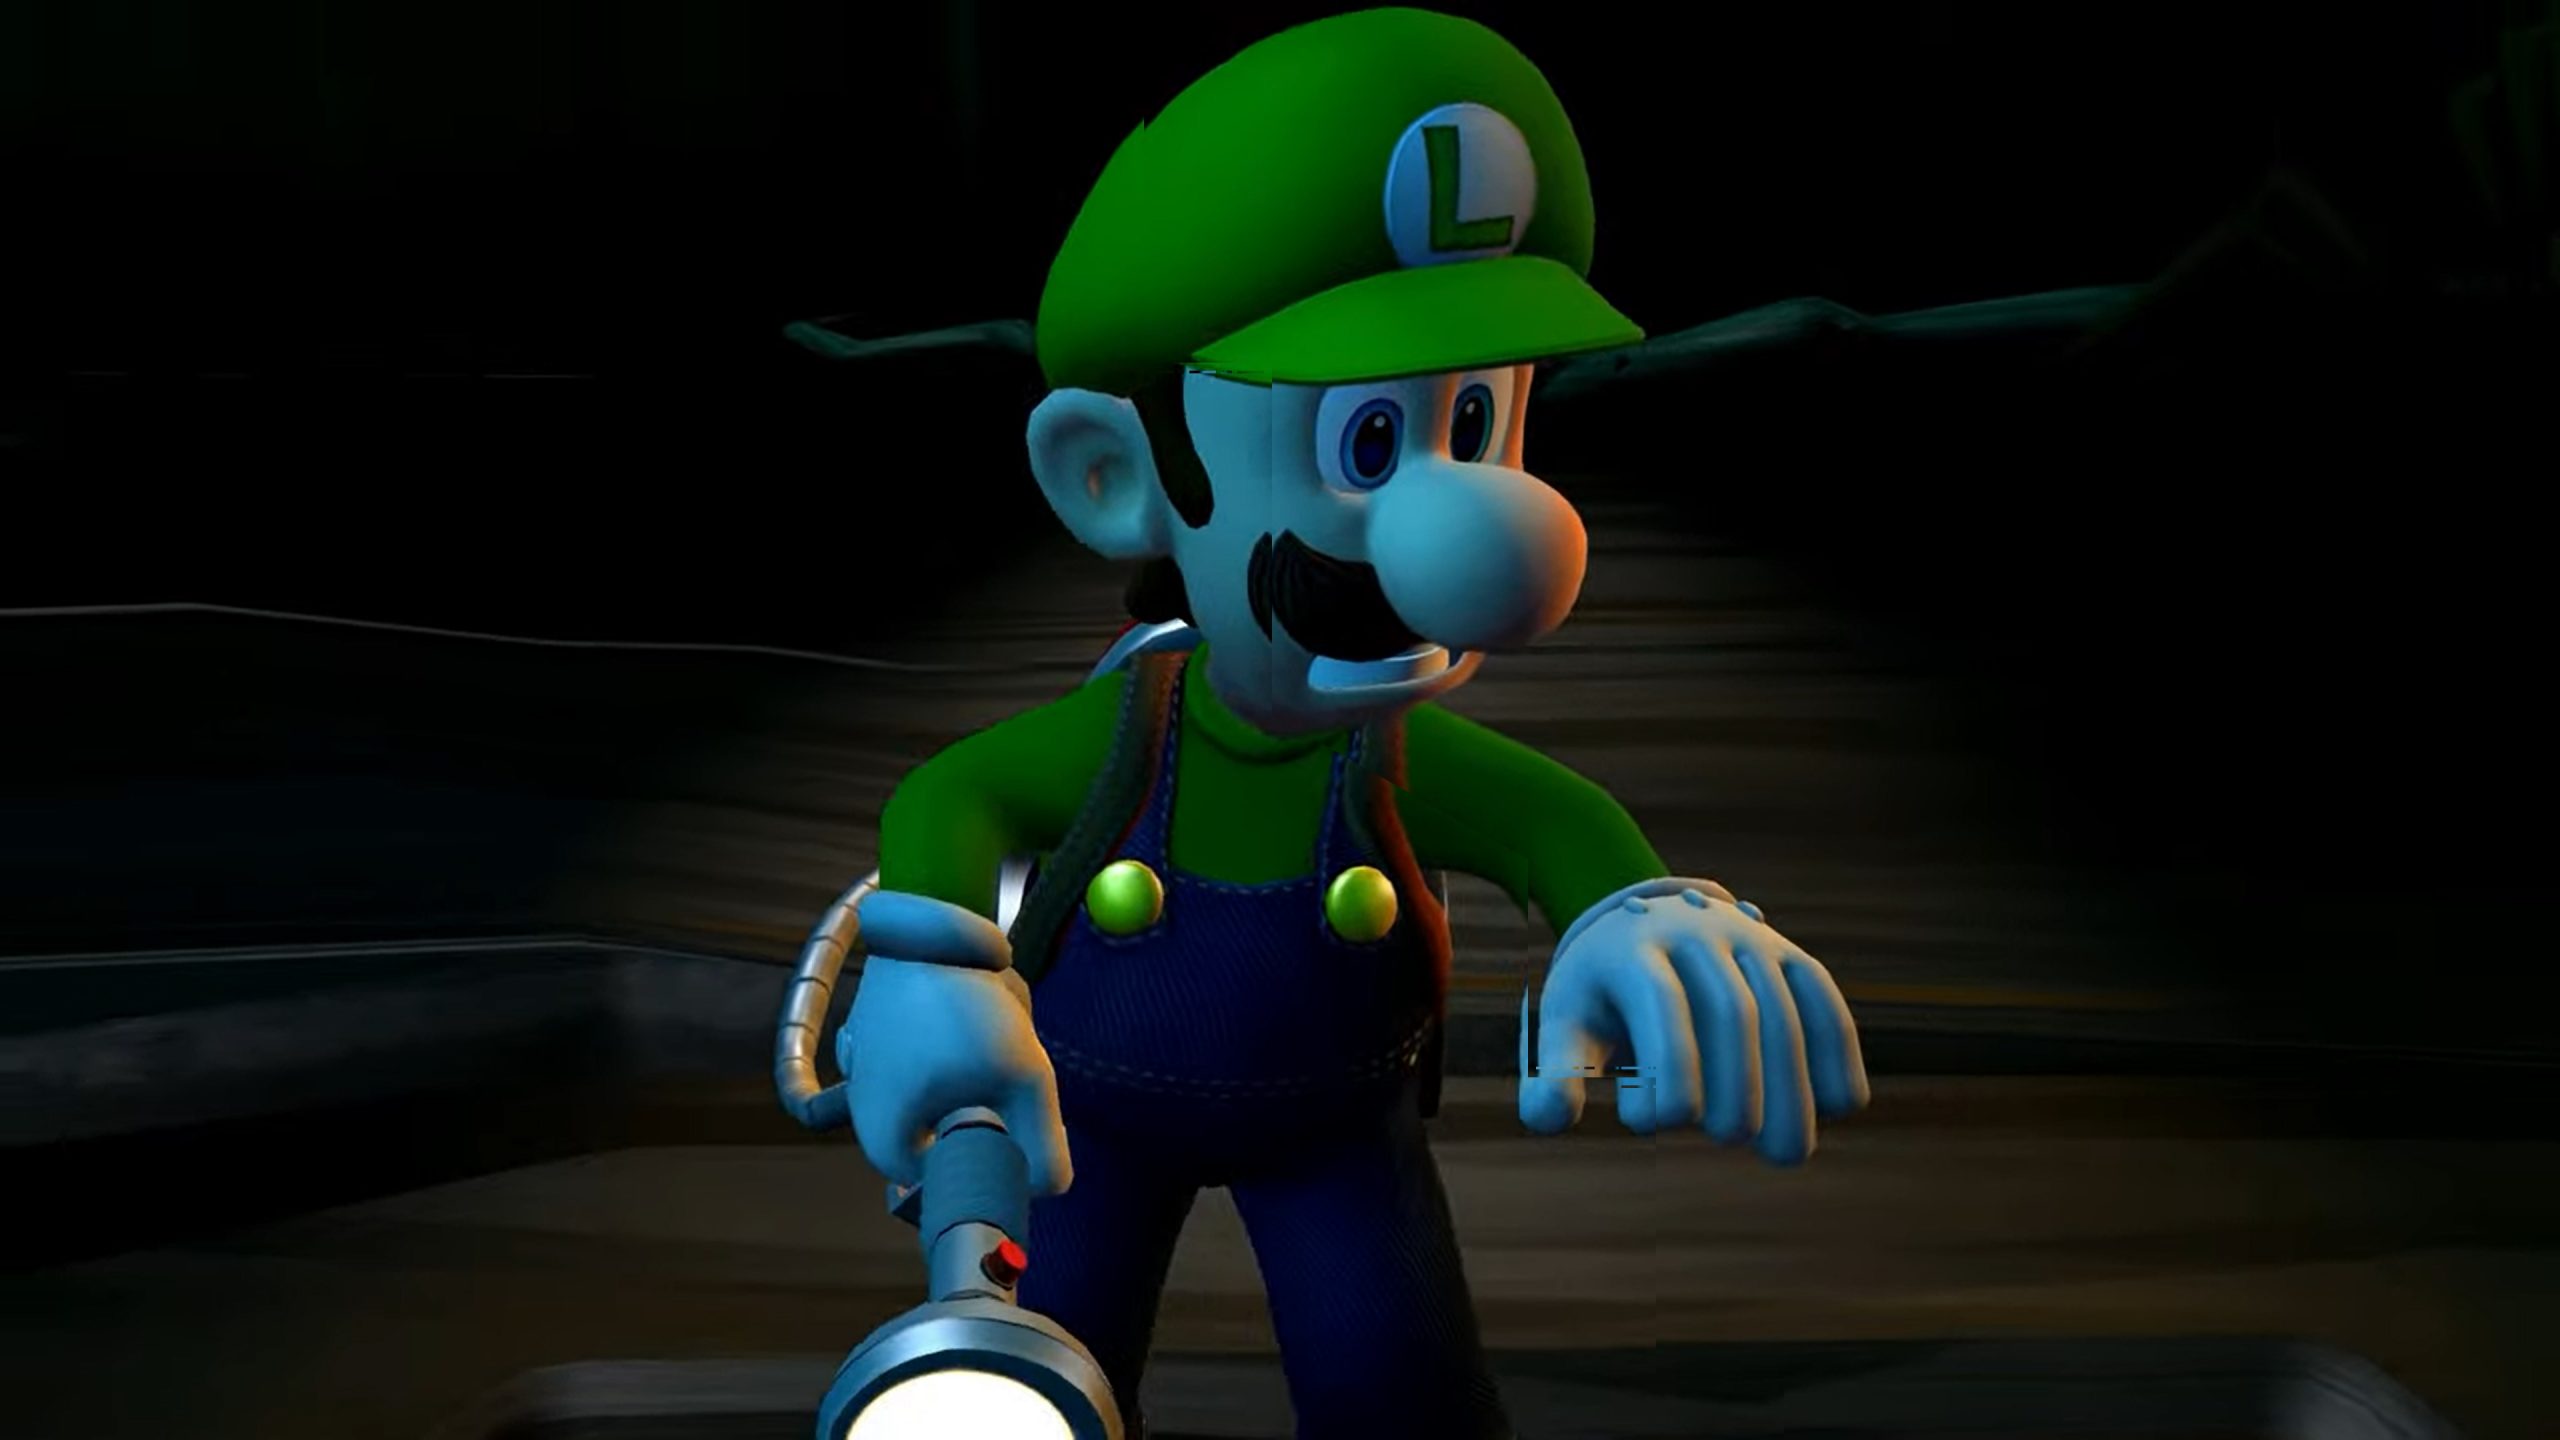 Luigi's Mansion - 3DS Gameplay Walkthrough Part 1 - Area 1